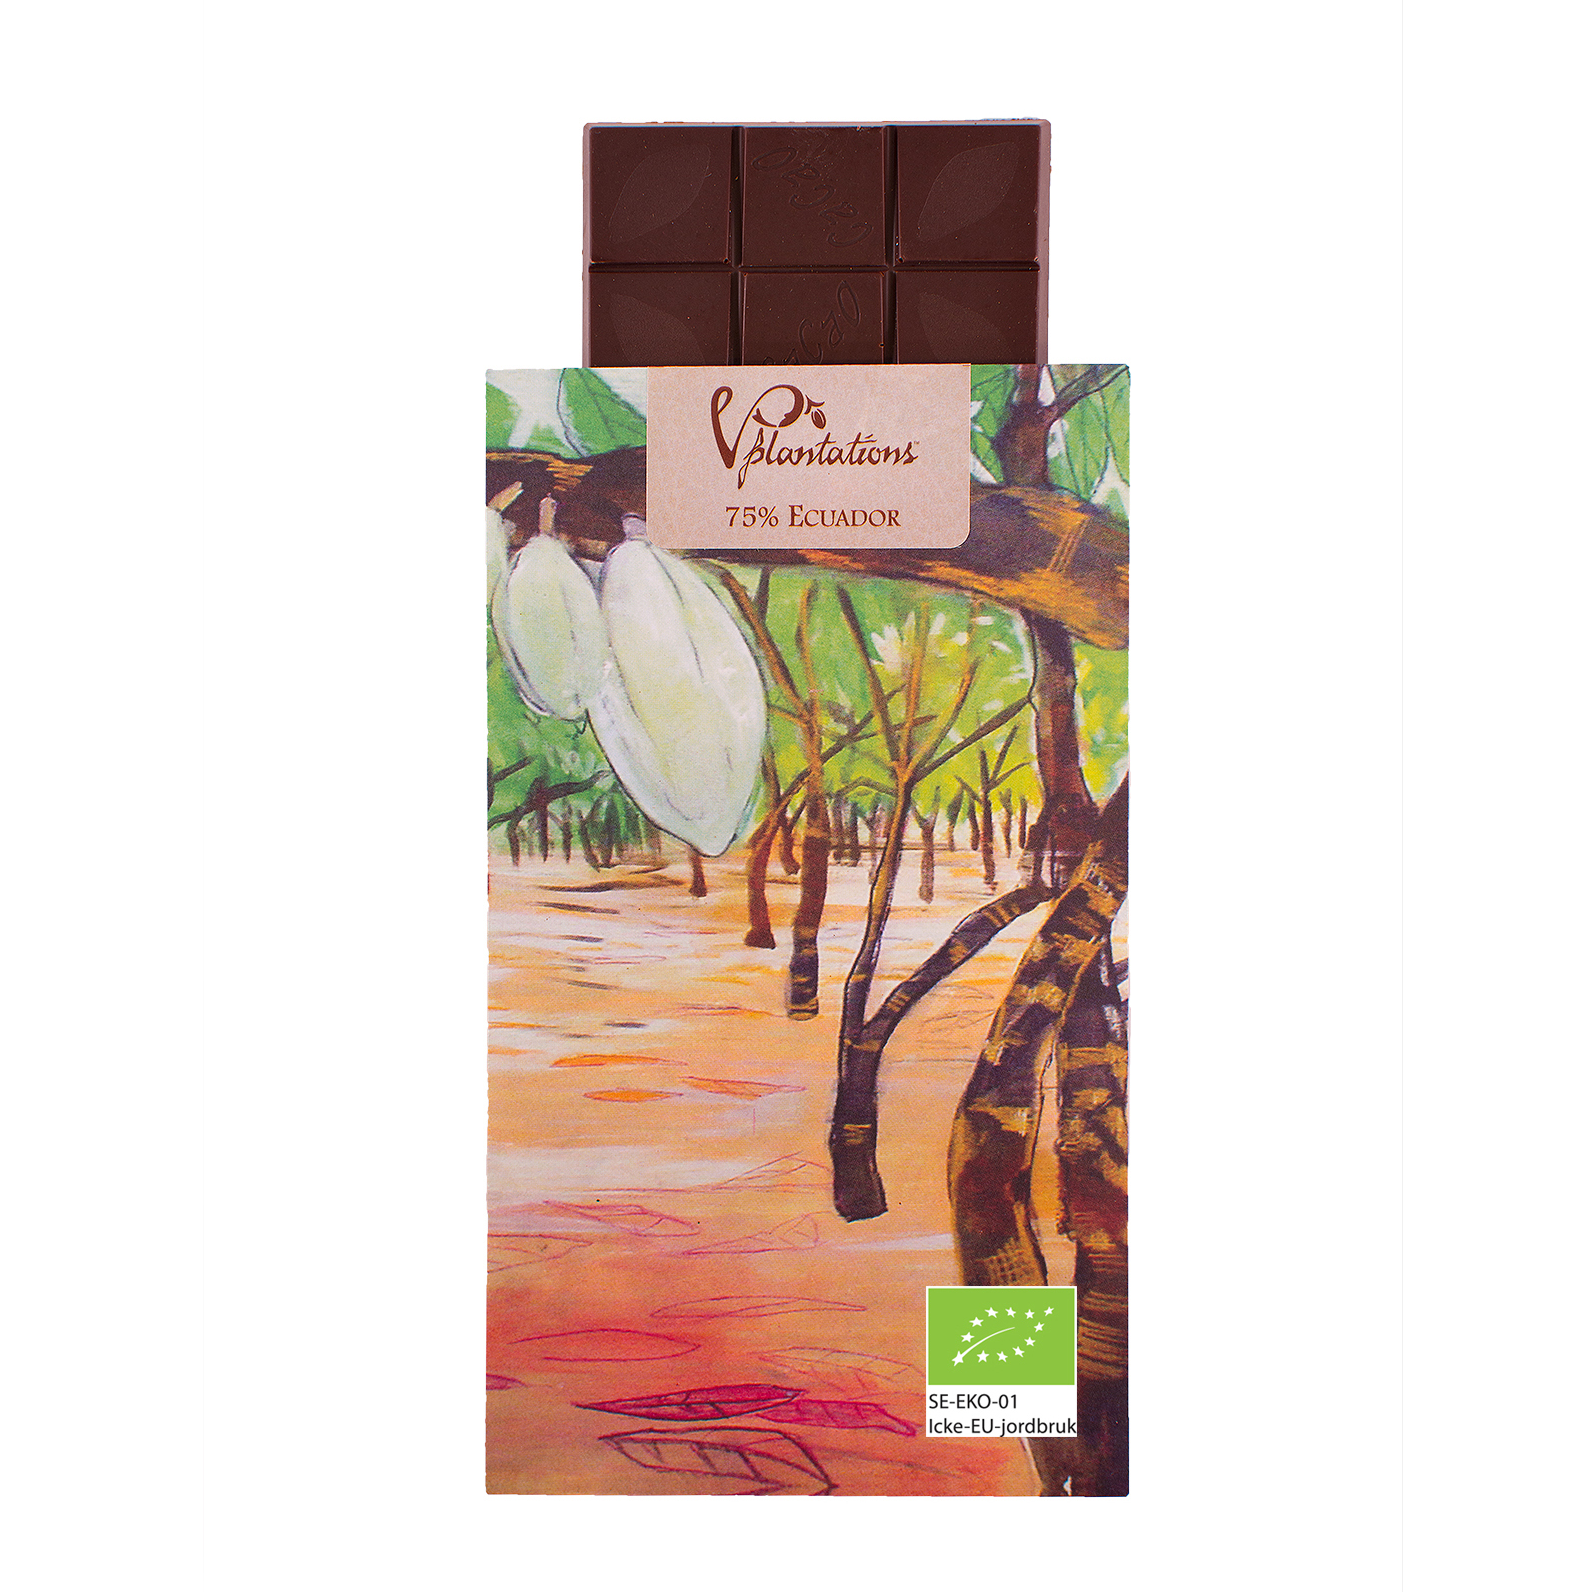 's Ecuador Chocolate 75% Cocoa Content'